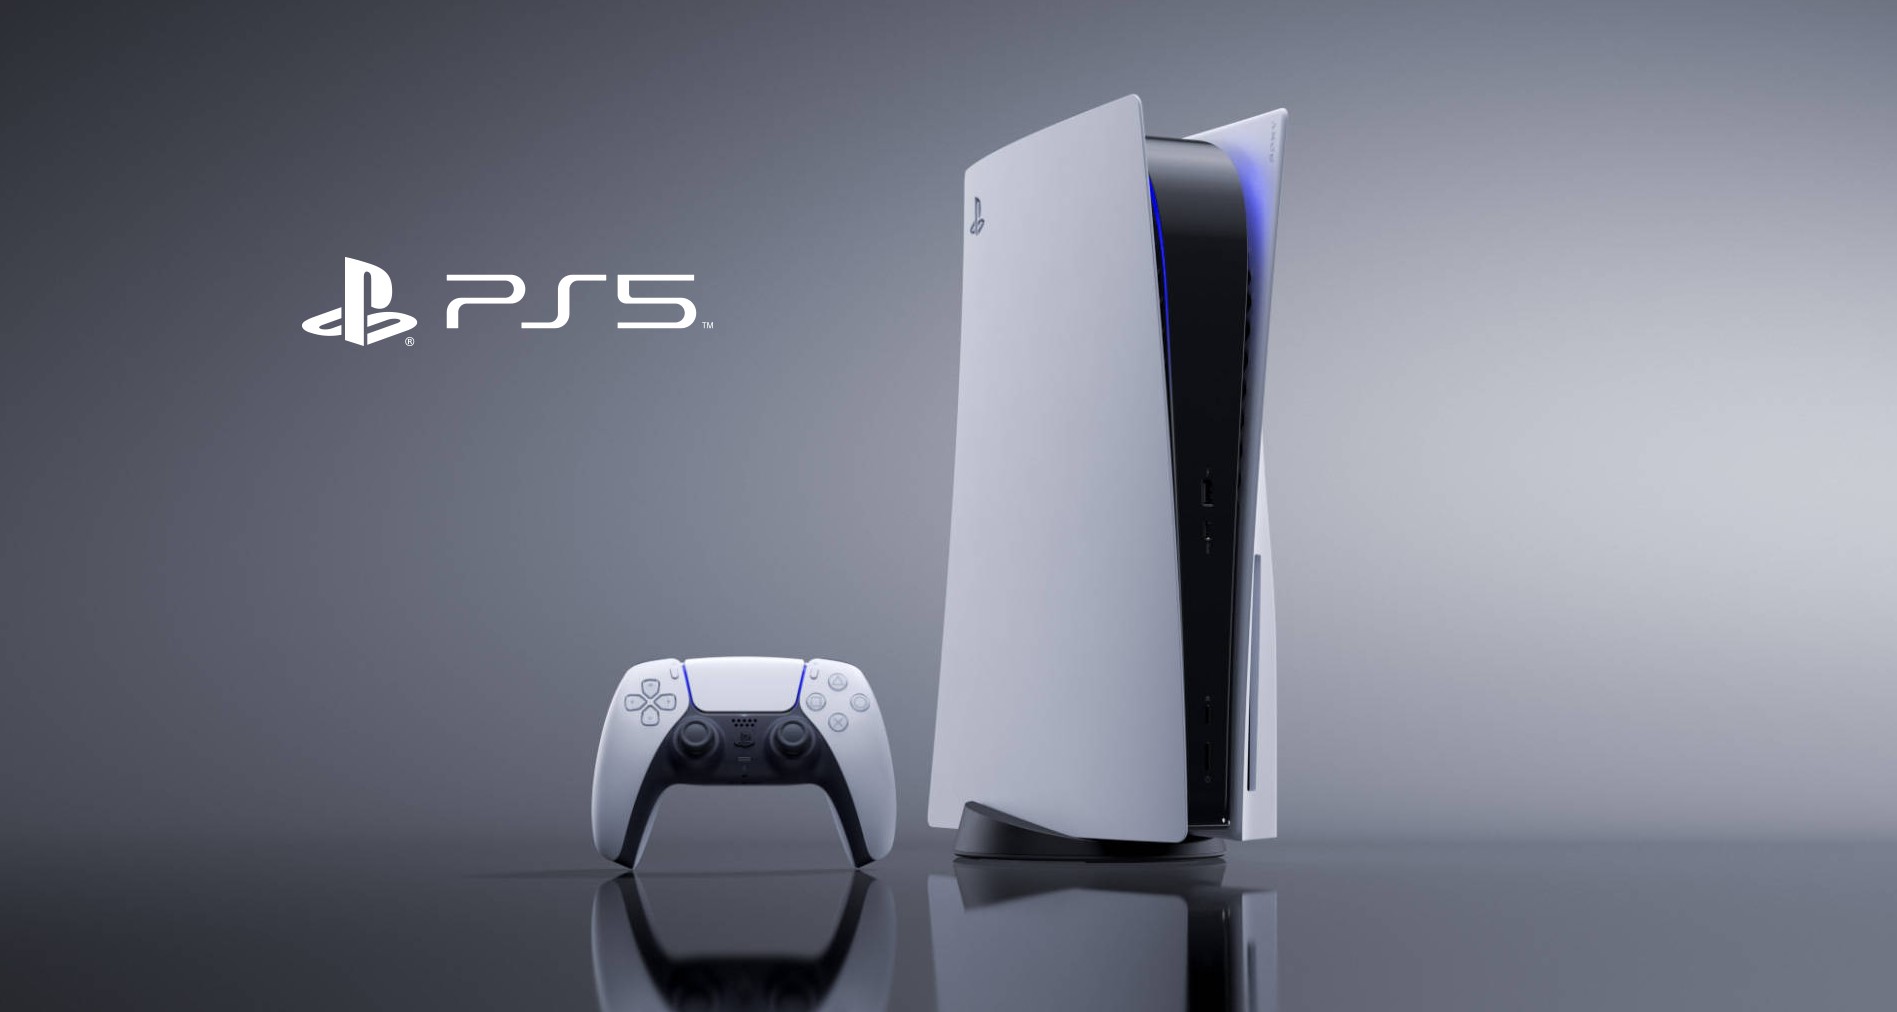 Melhores jogos PS5: veja 25 games entre exclusivos e multiplataforma